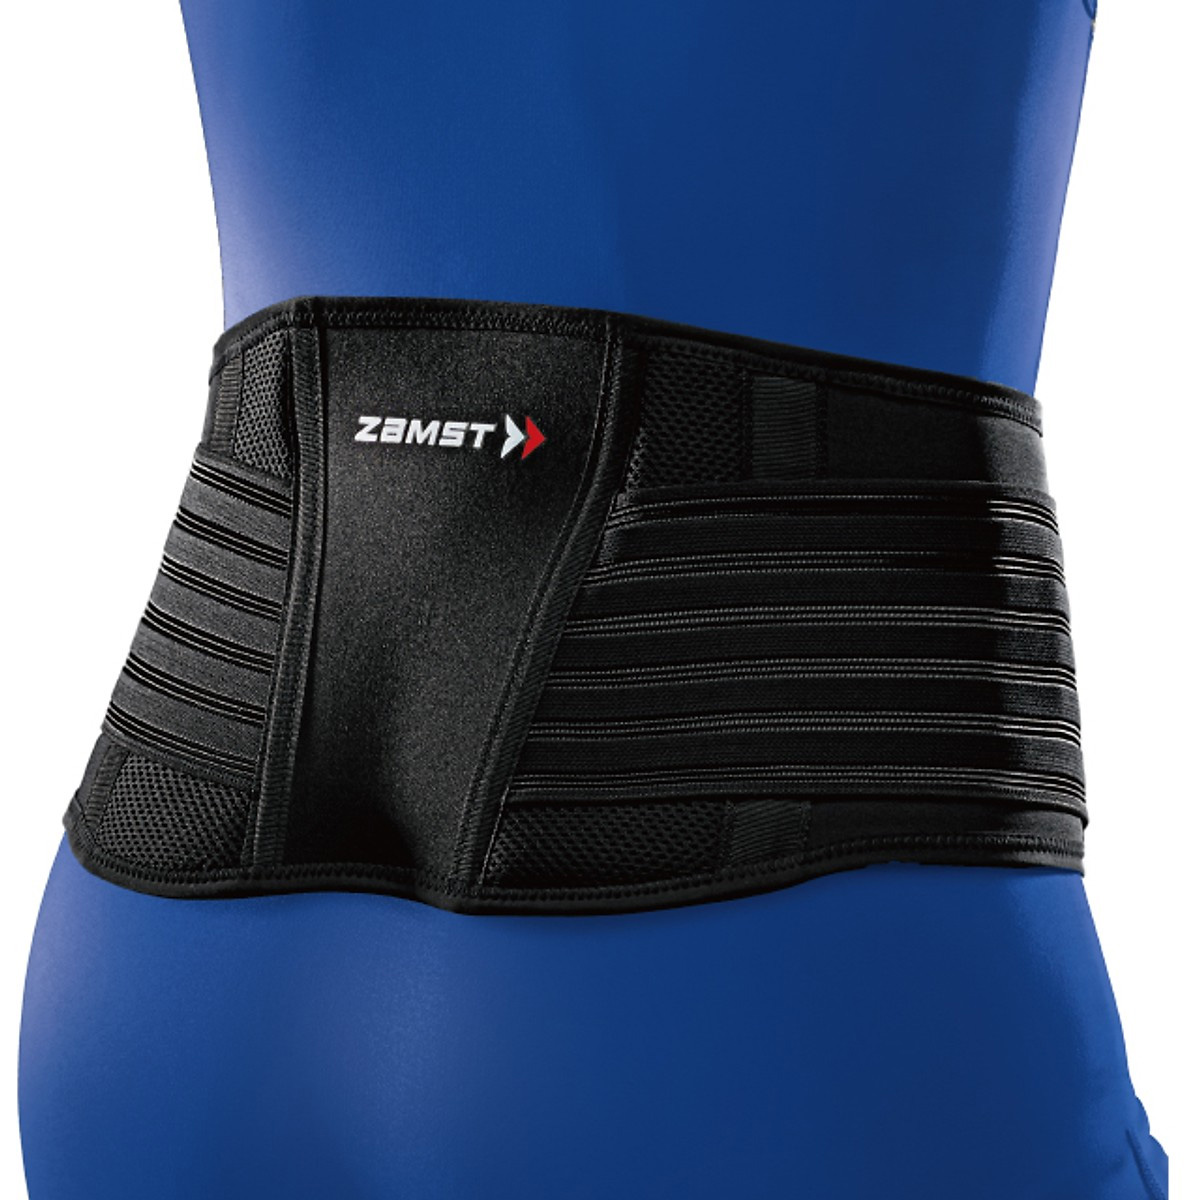 Đai hỗ trợ bảo vệ vùng lưng thấp ZAMST ZW-5 (Lower back support) -  Đai bảo vệ lưng thấp